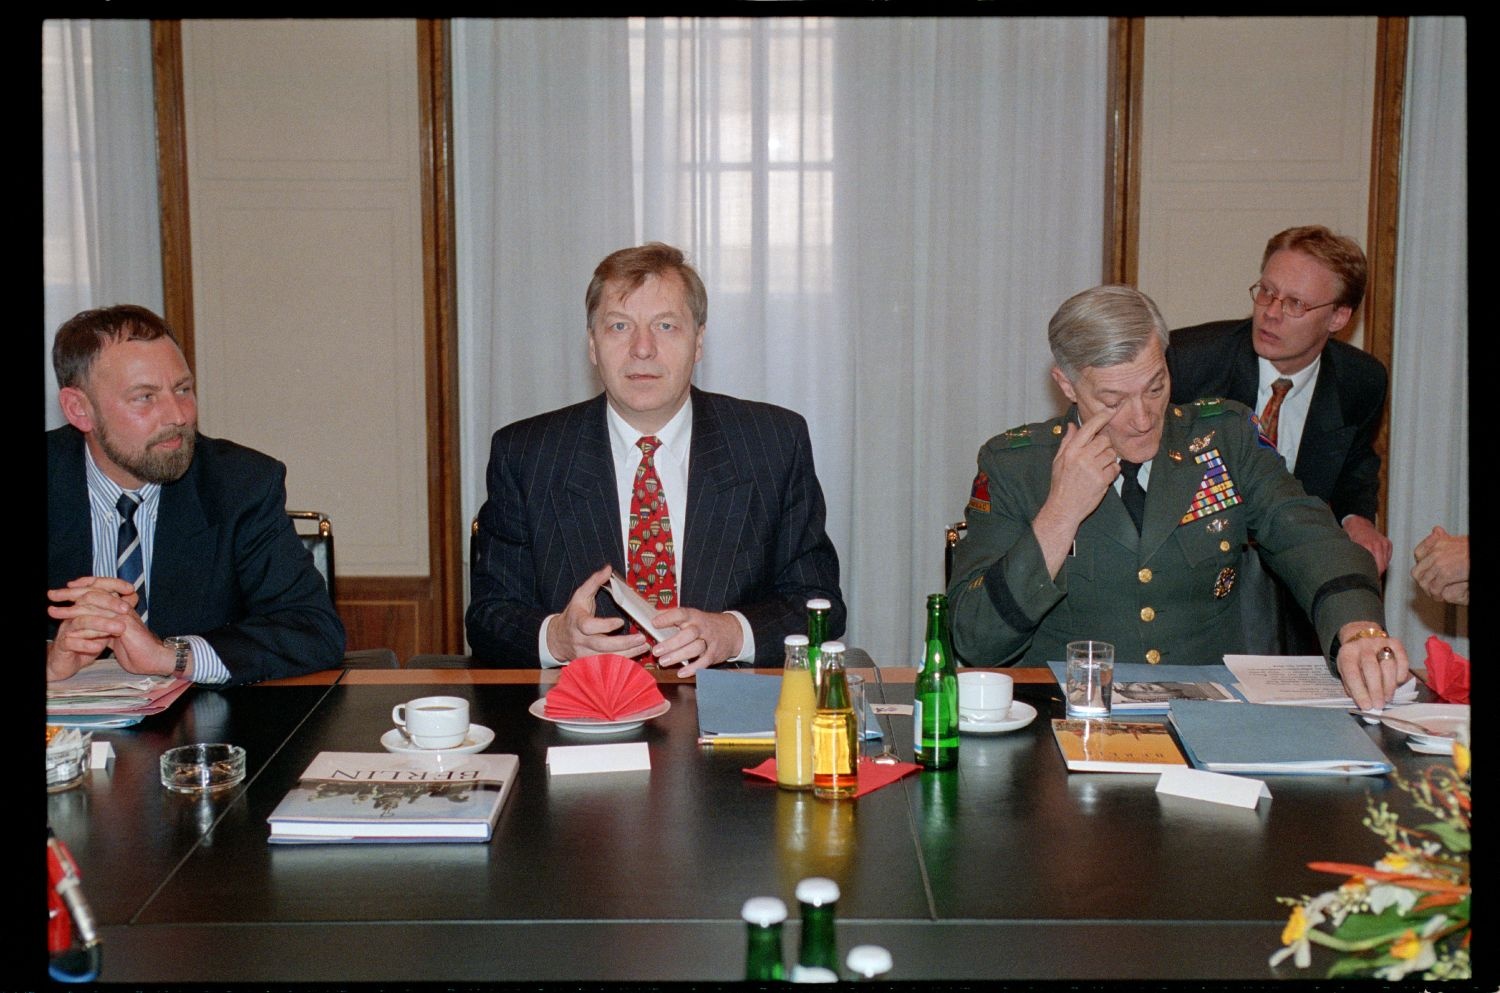 Fotografie: Letztes Treffen des Deutsch-Amerikanischen Komitees im Roten Rathaus in Berlin-Mitte (AlliiertenMuseum/U.S. Army Photograph Public Domain Mark)